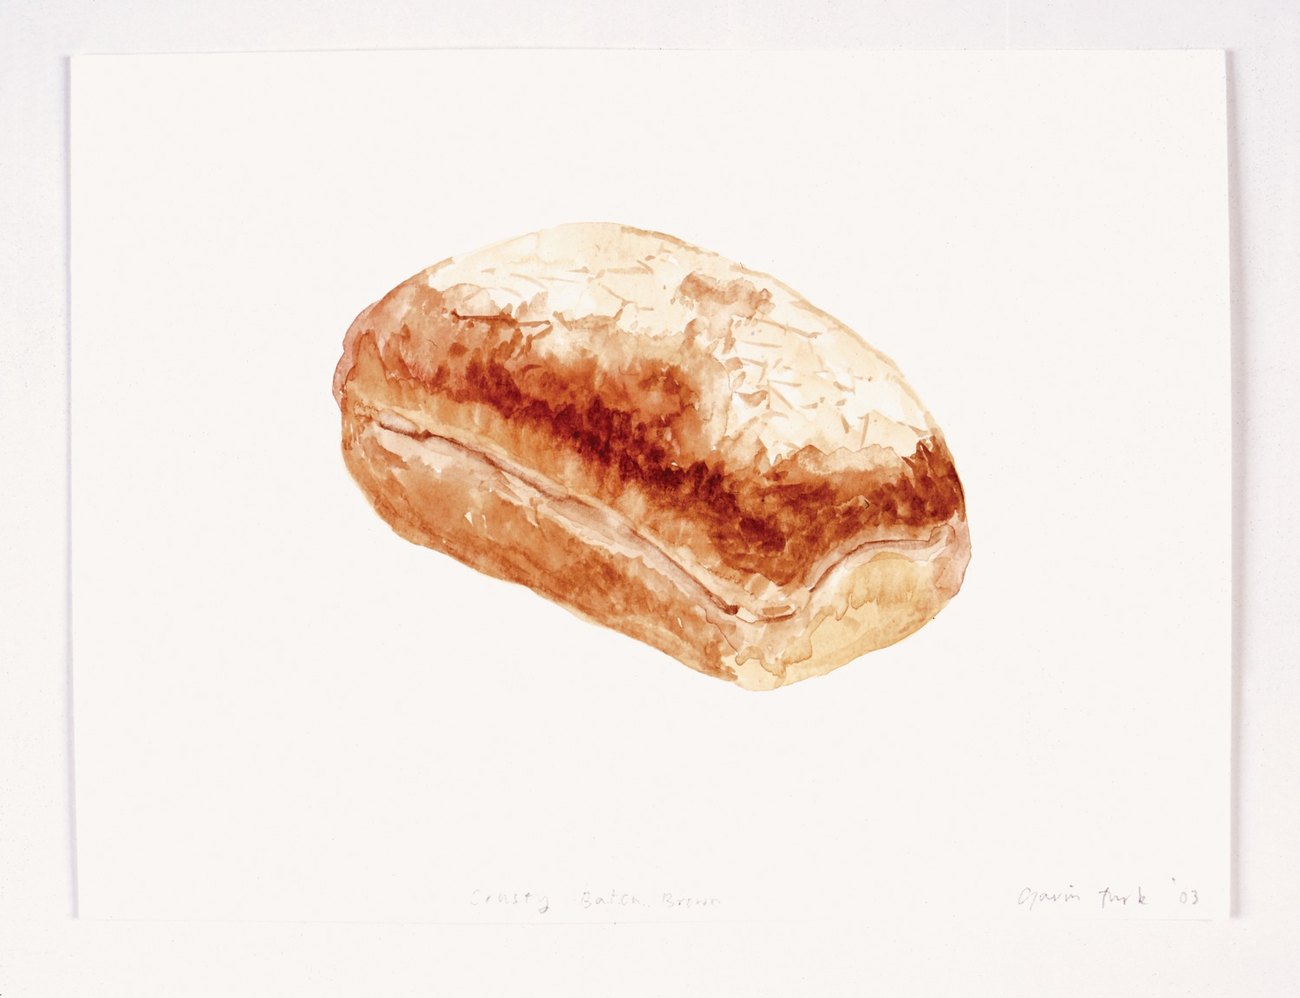 Daily bread (crusty batch brown) (2)